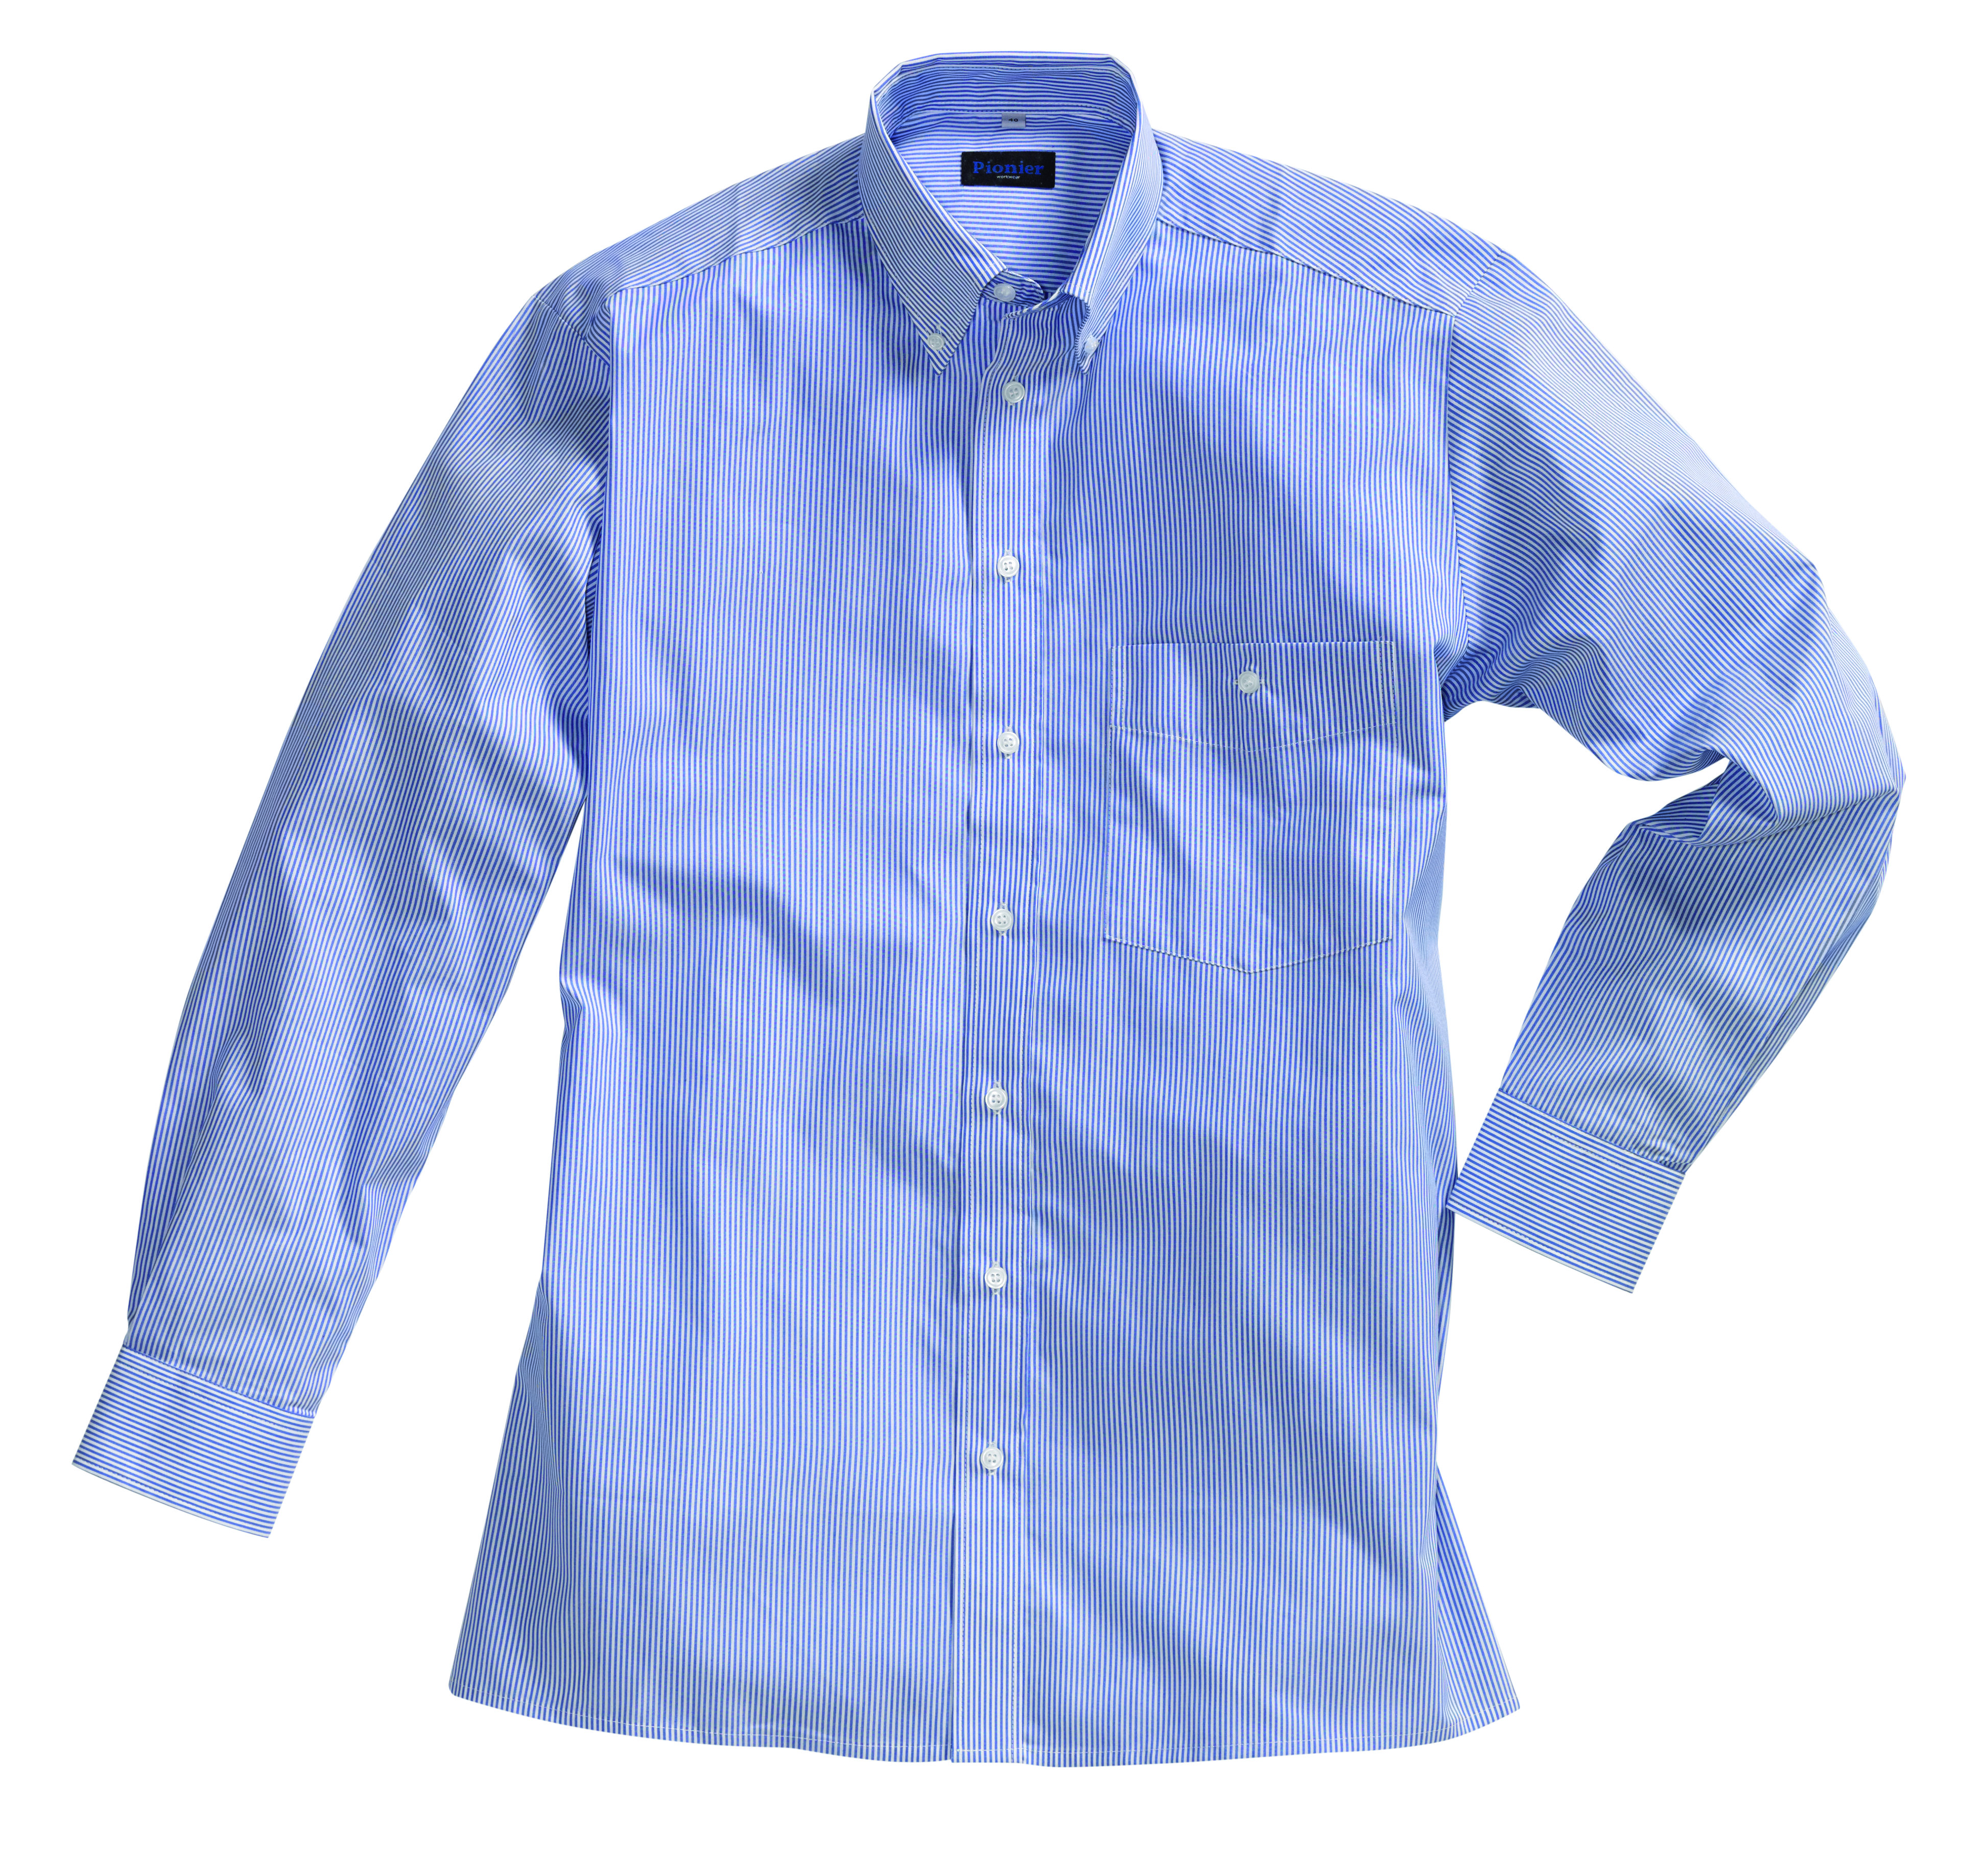 PIONIER Herrenhemd Arbeitshemd Berufshemd Flanell Hemd Button Down Kragen 1 1 Arm BUSINESS blau weiss gestreift